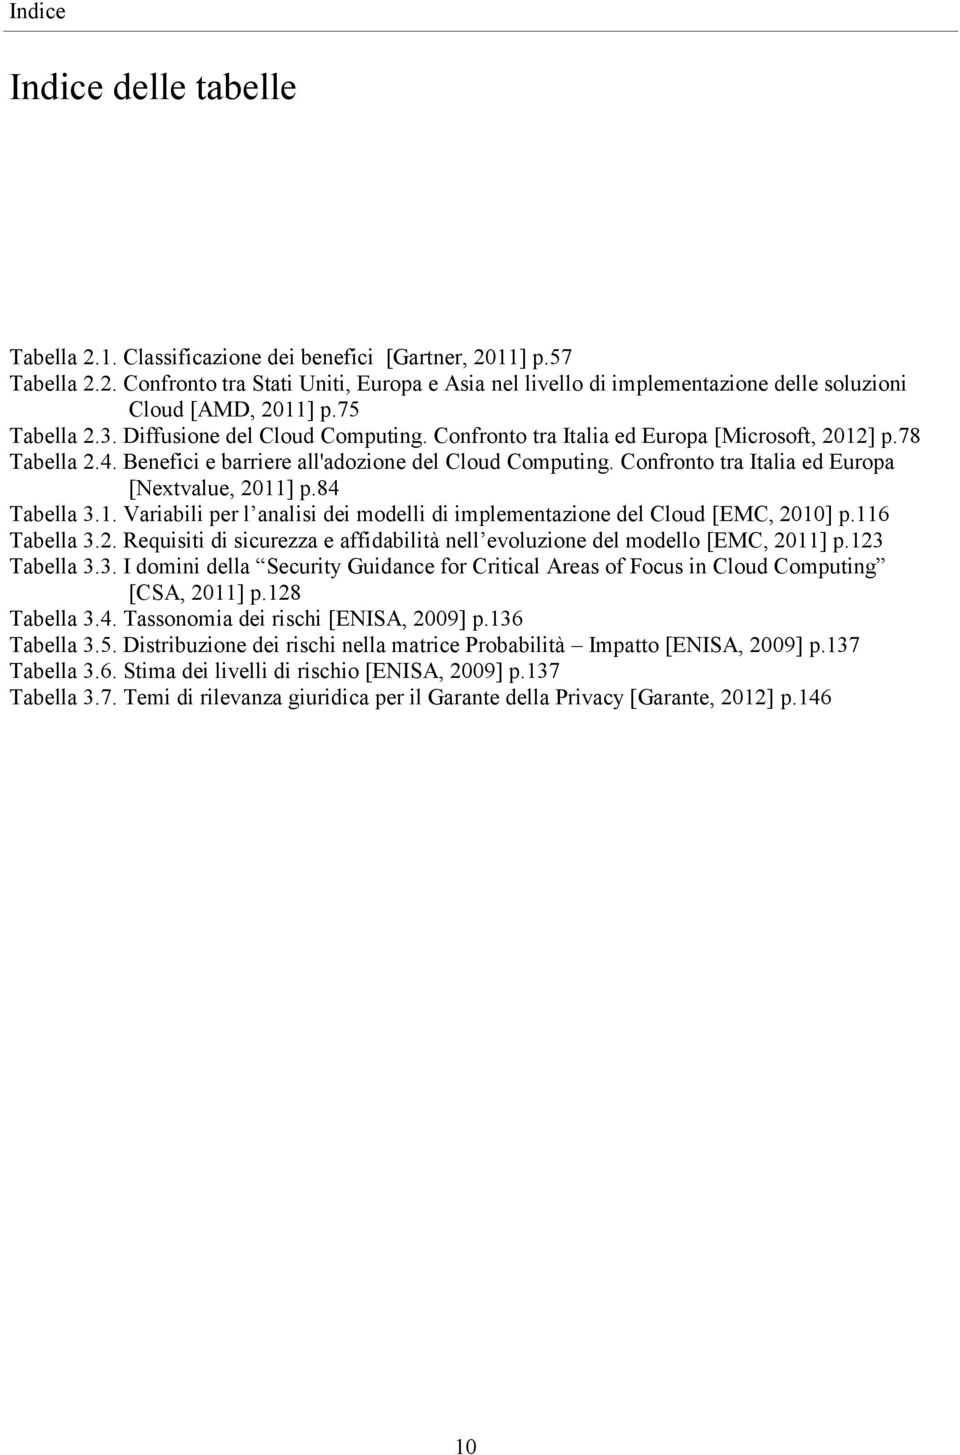 Confronto tra Italia ed Europa [Nextvalue, 2011] p.84 Tabella 3.1. Variabili per l analisi dei modelli di implementazione del Cloud [EMC, 2010] p.116 Tabella 3.2. Requisiti di sicurezza e affidabilità nell evoluzione del modello [EMC, 2011] p.